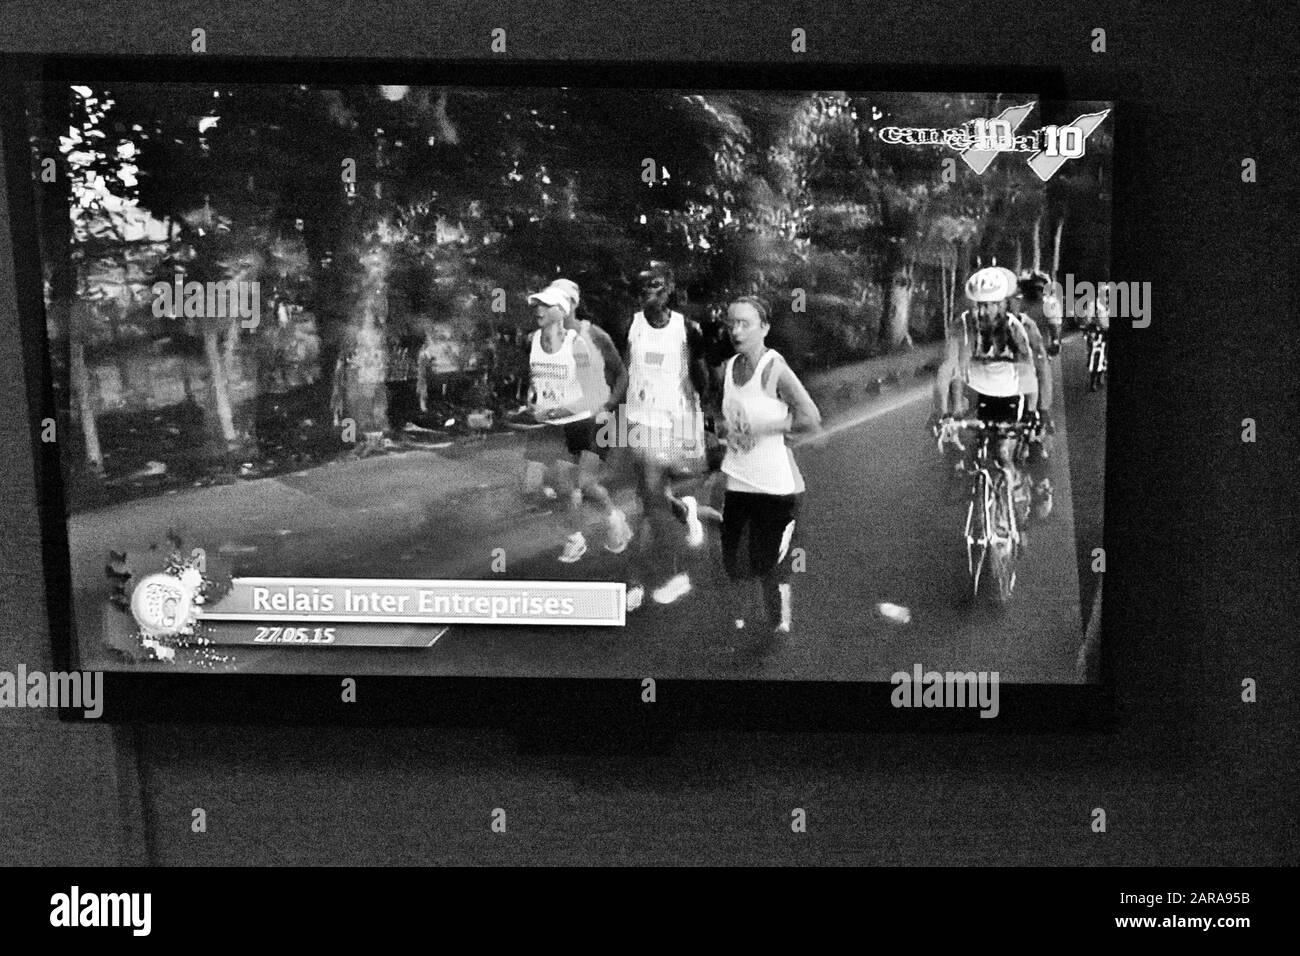 Actualités TV, coureurs marathon, Paris, France, Europe Banque D'Images